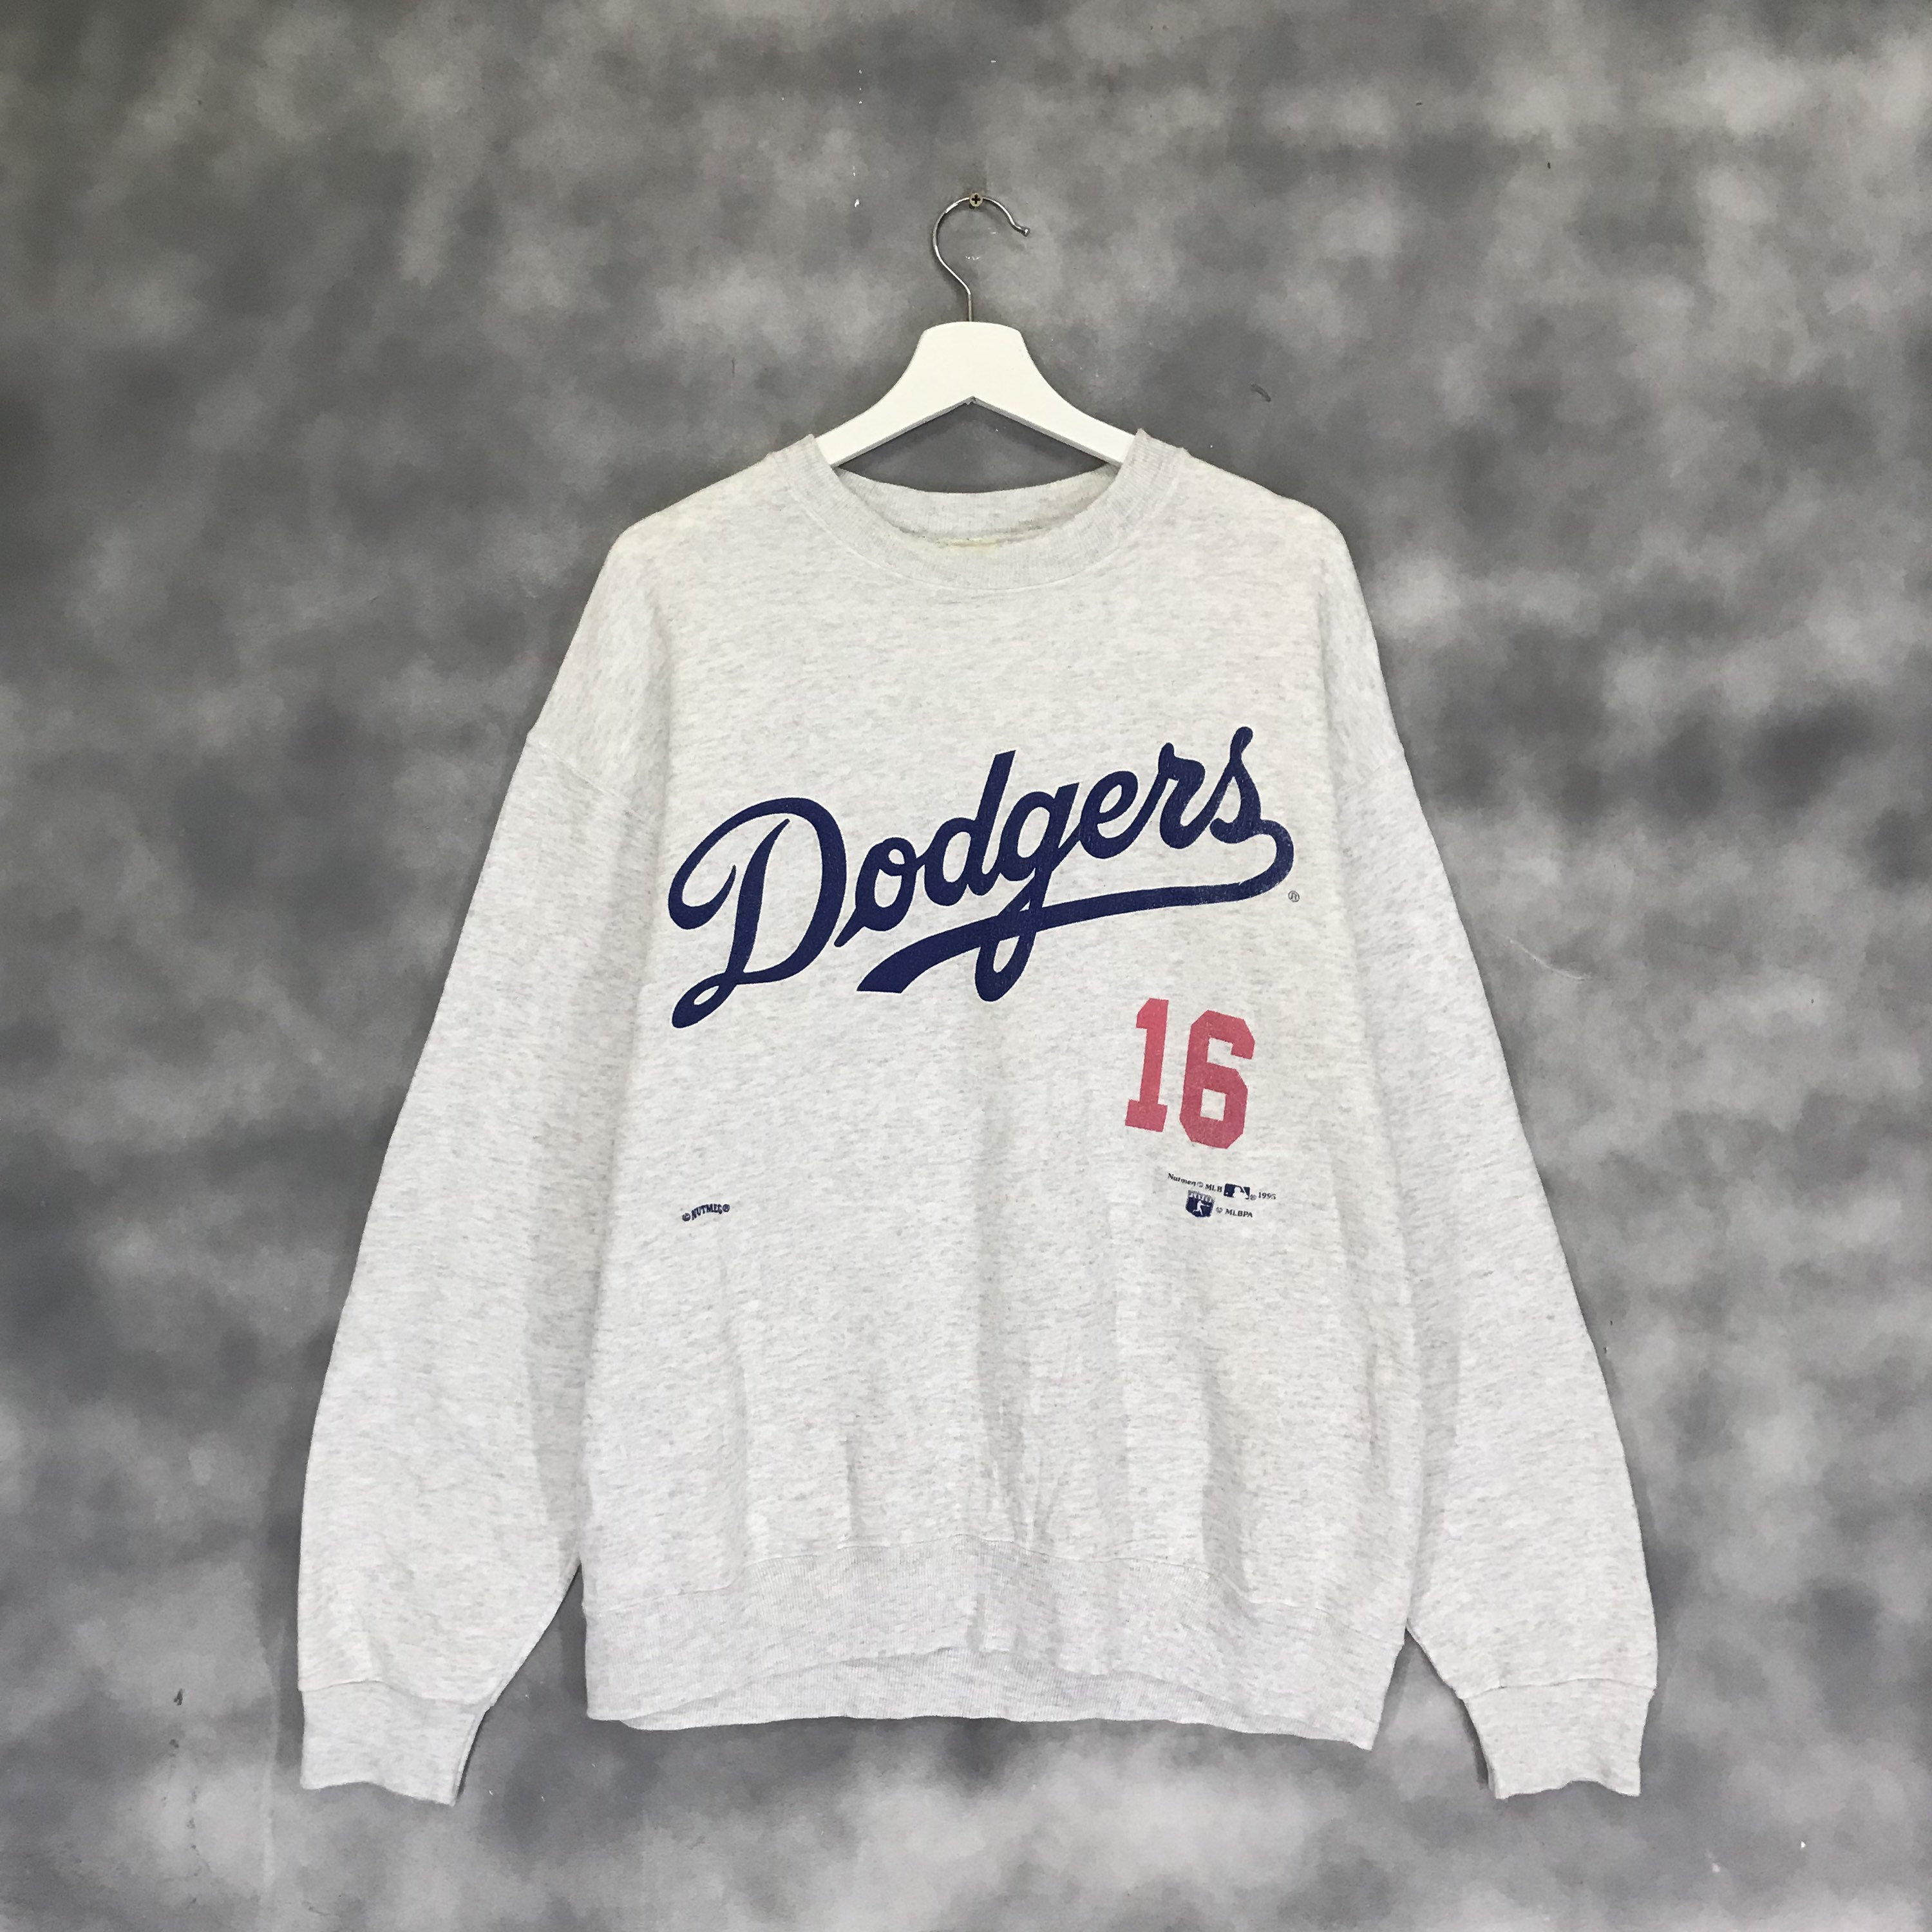 Buy La Dodgers Sweatshirt Online In India -  India